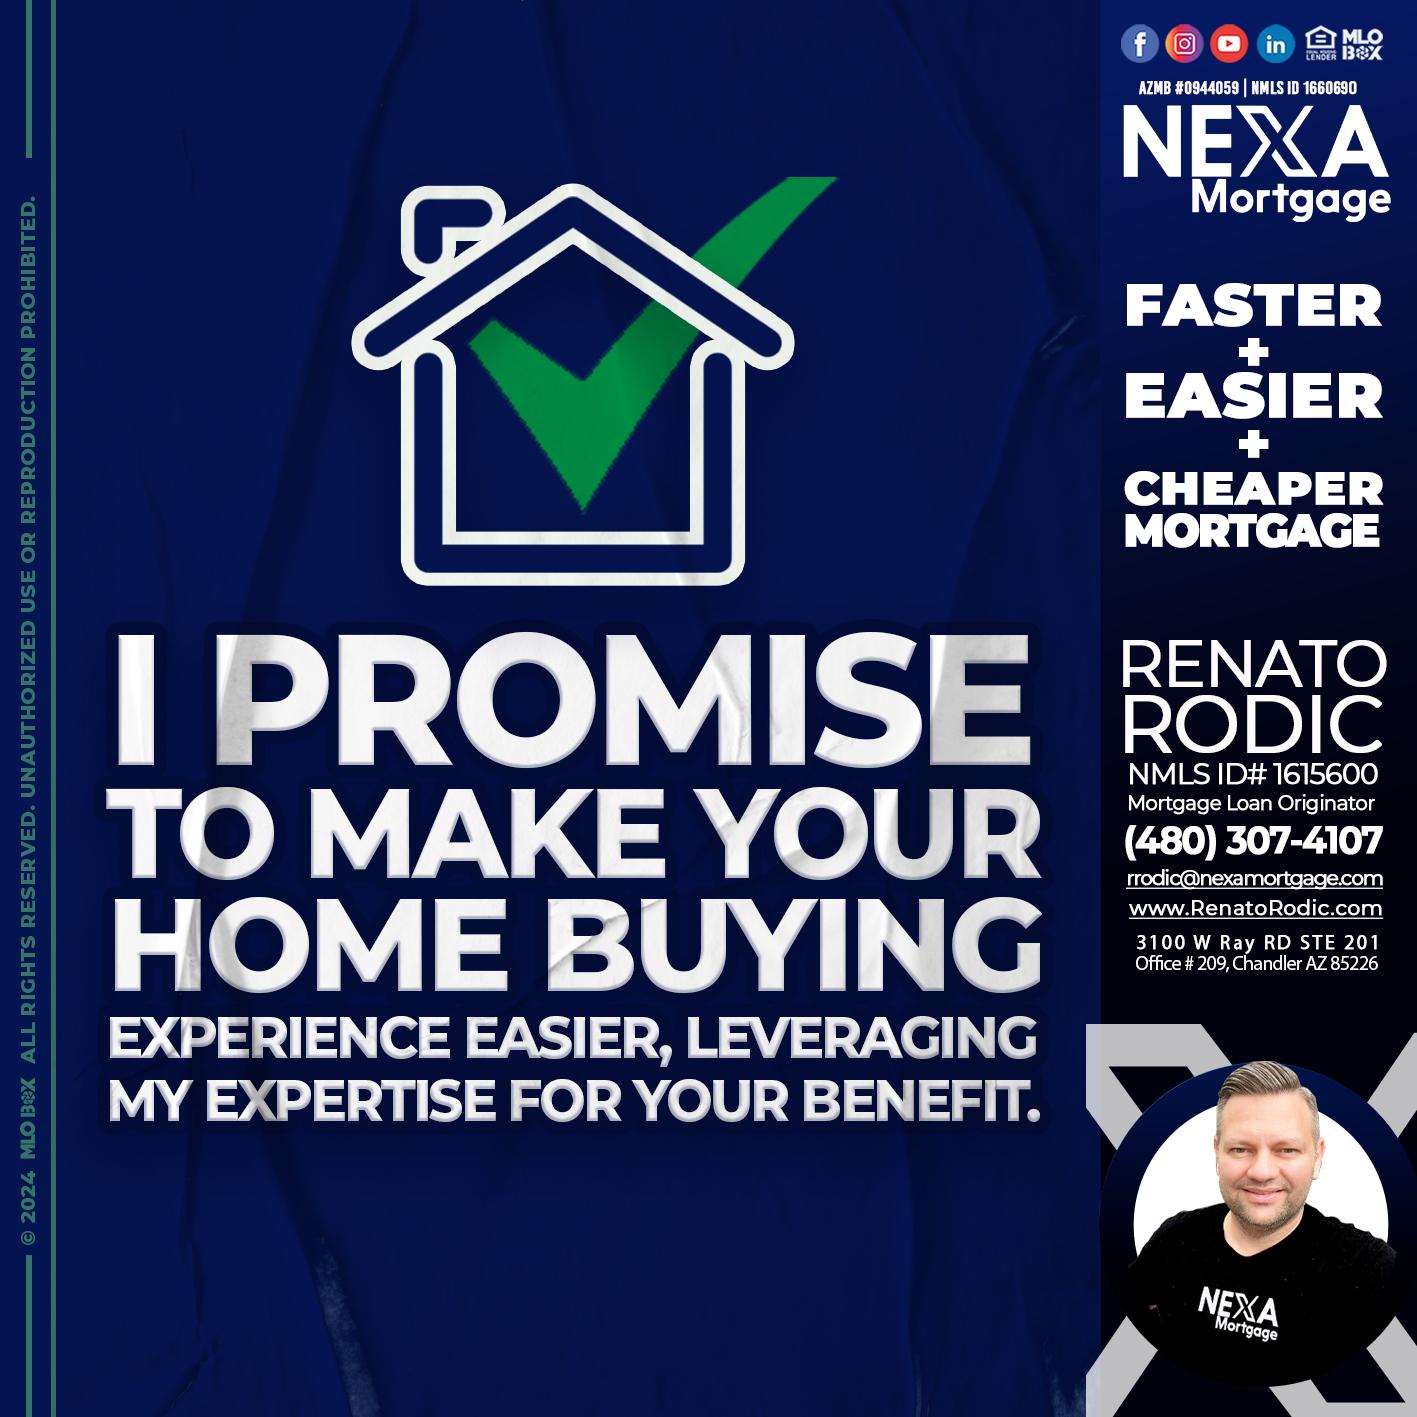 I PROMISE - Renato Rodic -Mortgage Loan Originator